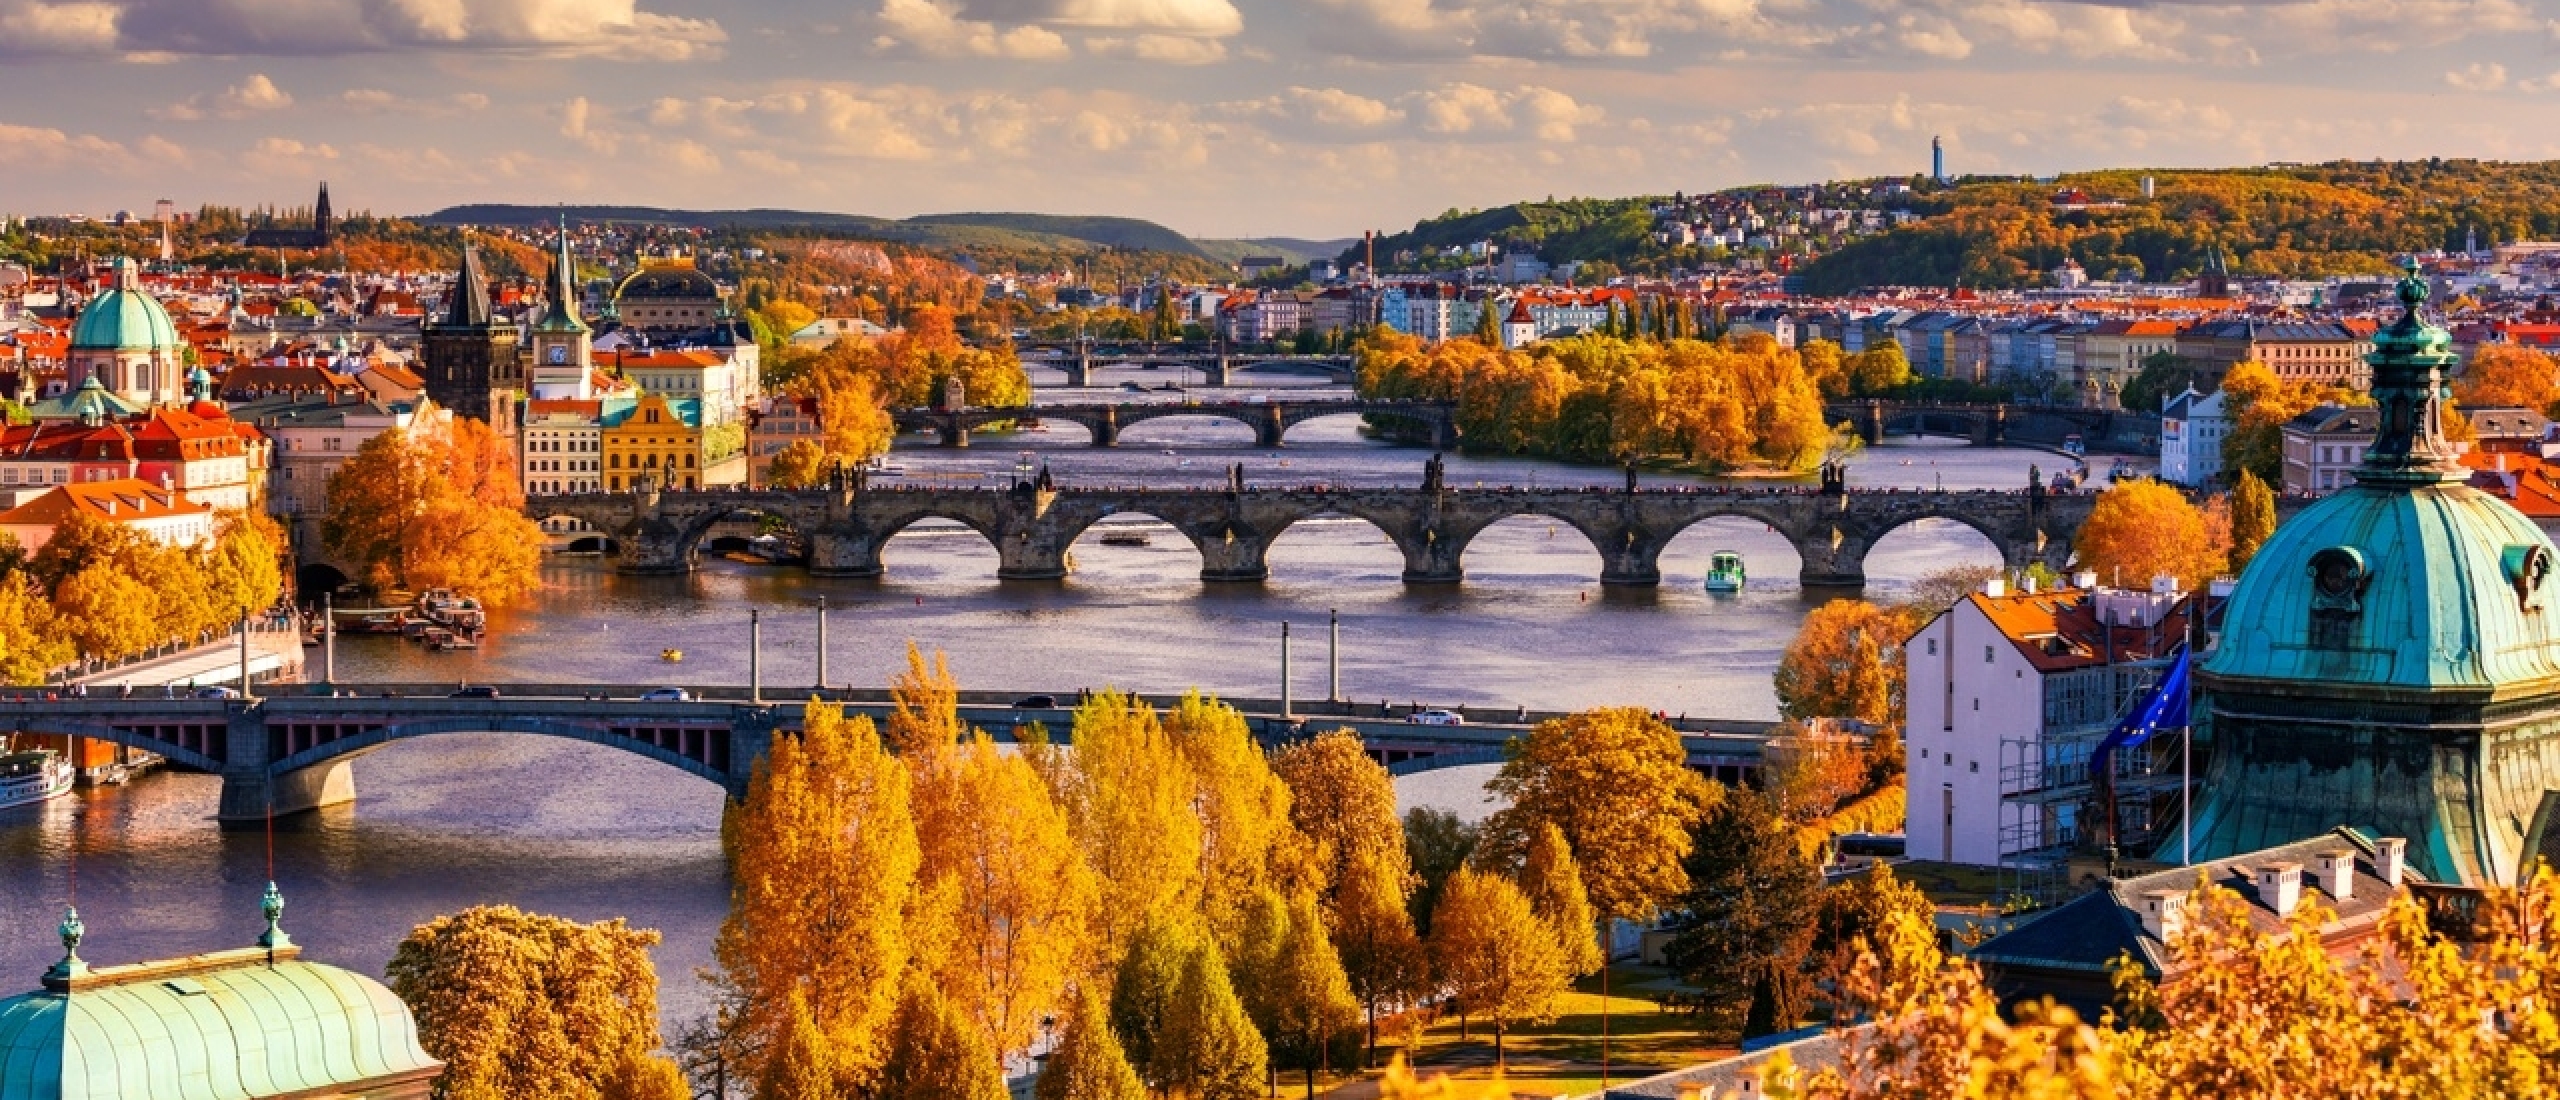 De 5 mooiste bruggen van Praag